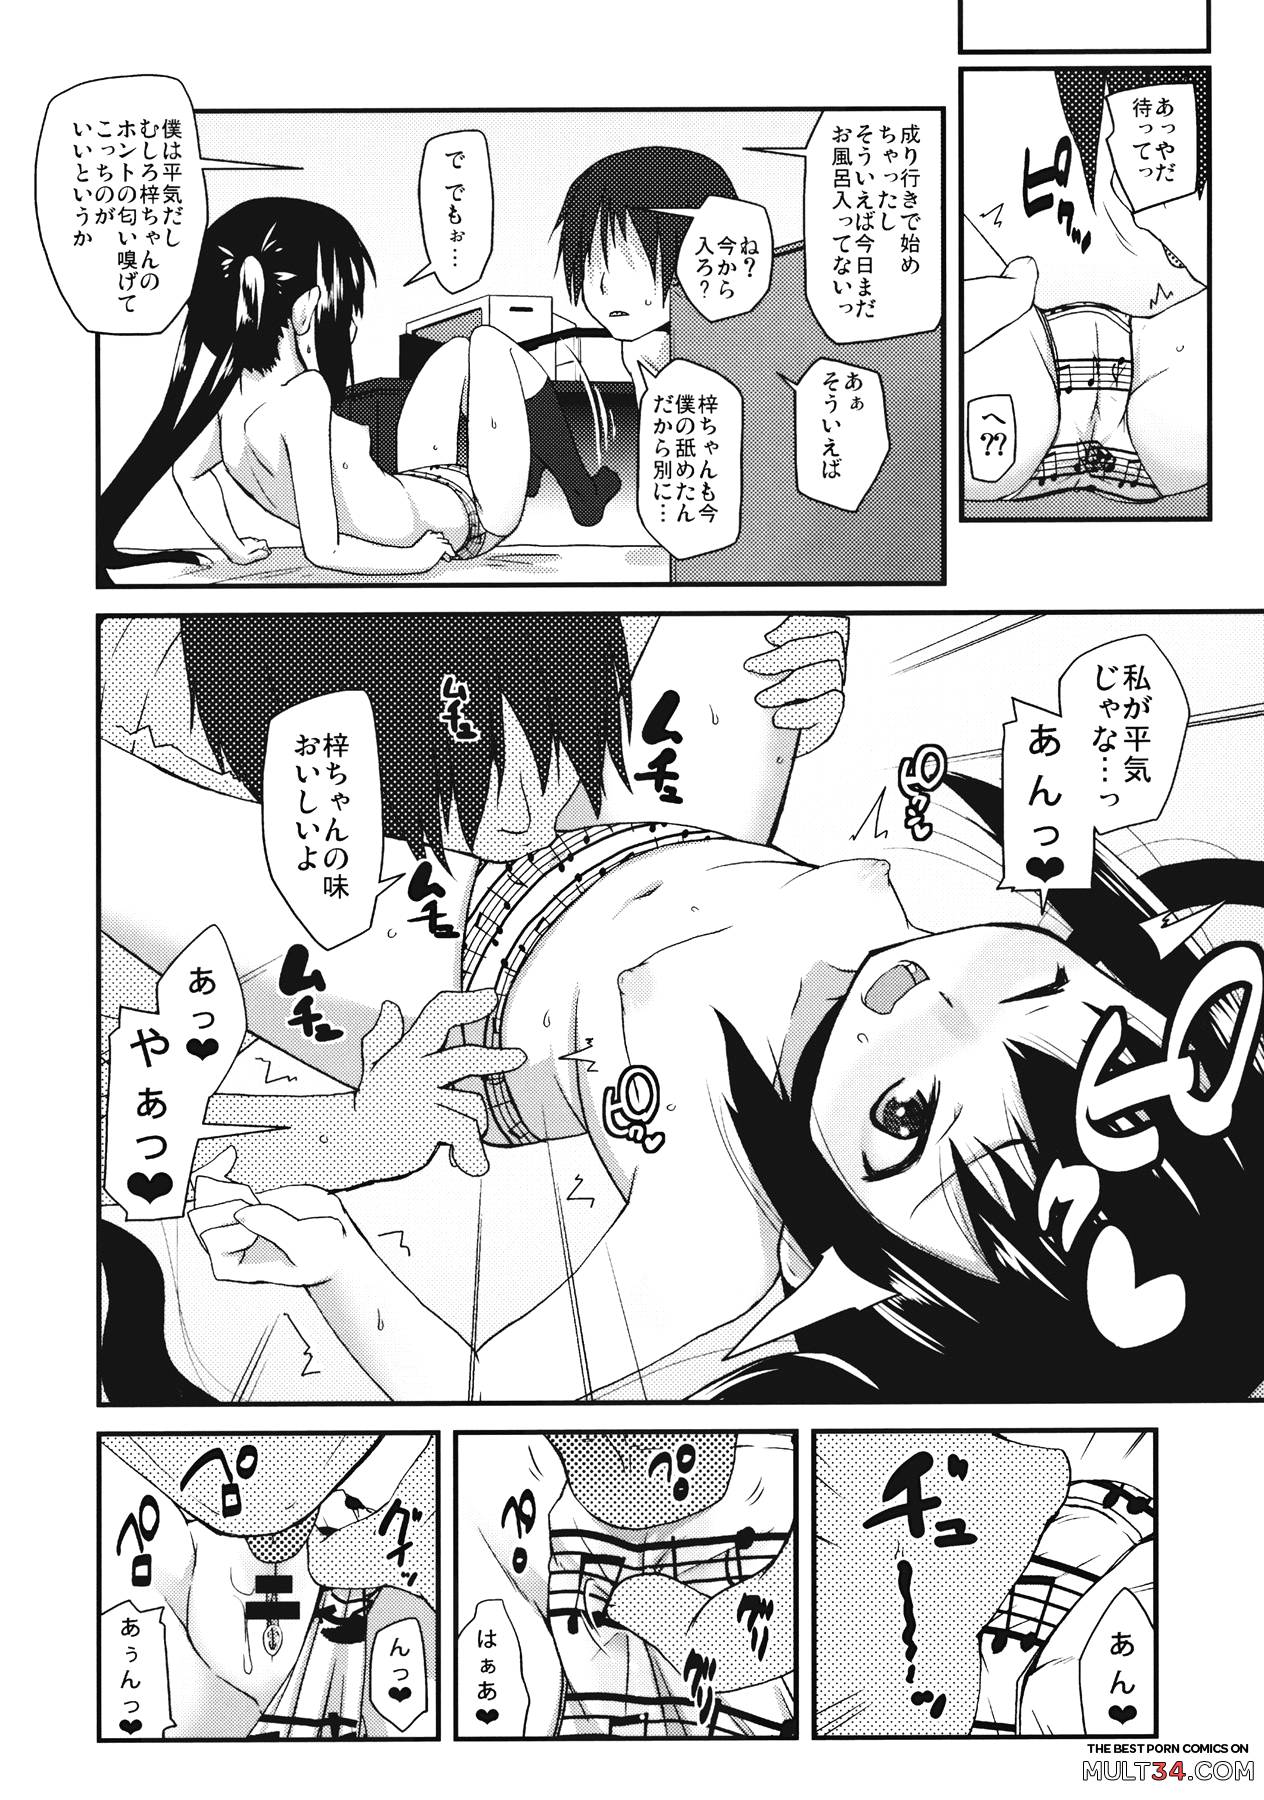 Moshikano!! page 12